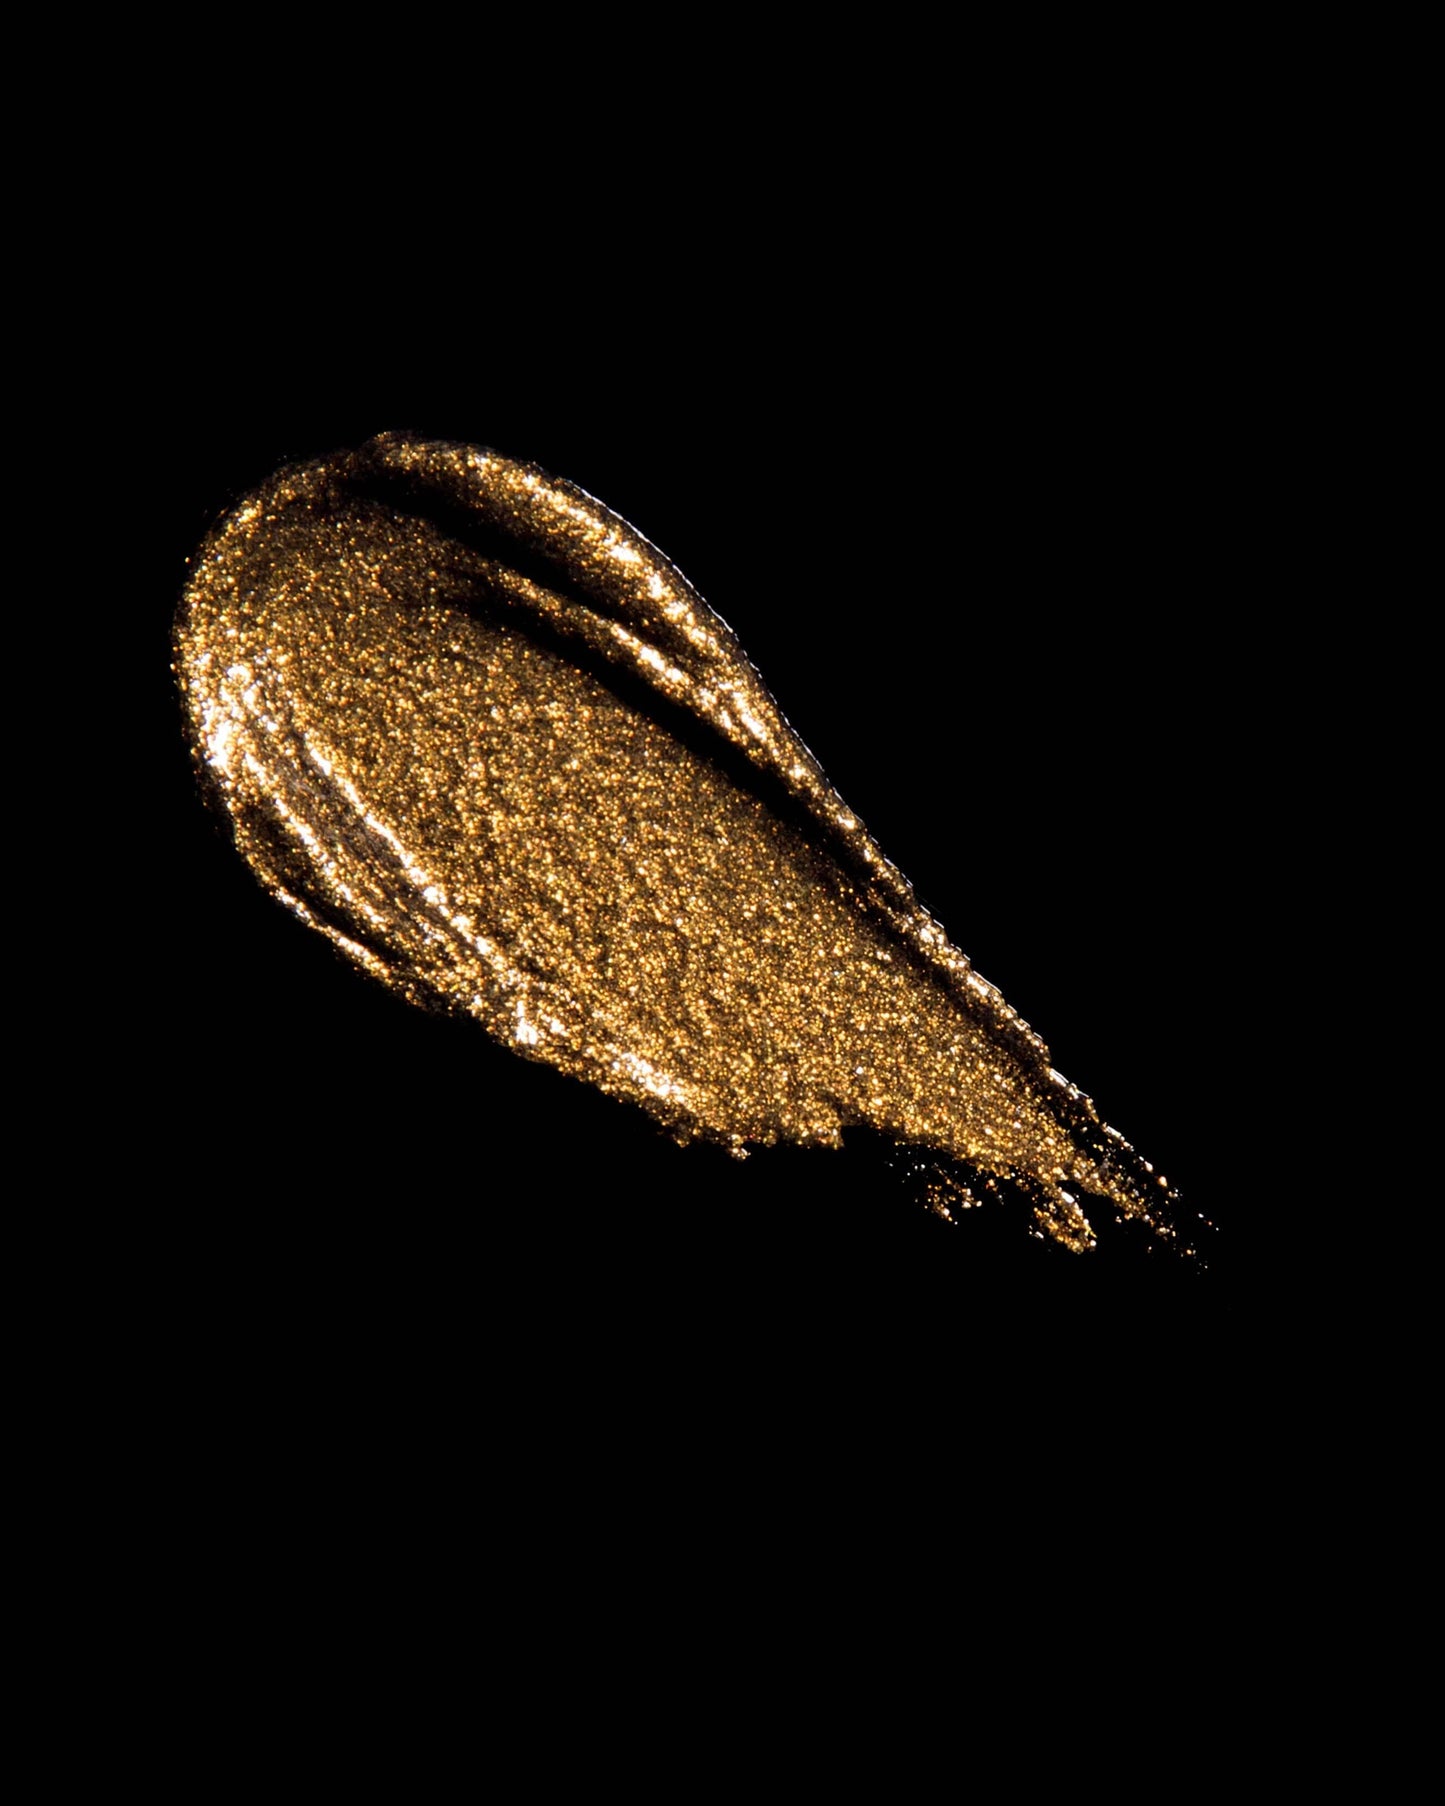 Serpens (rich, molten gold)